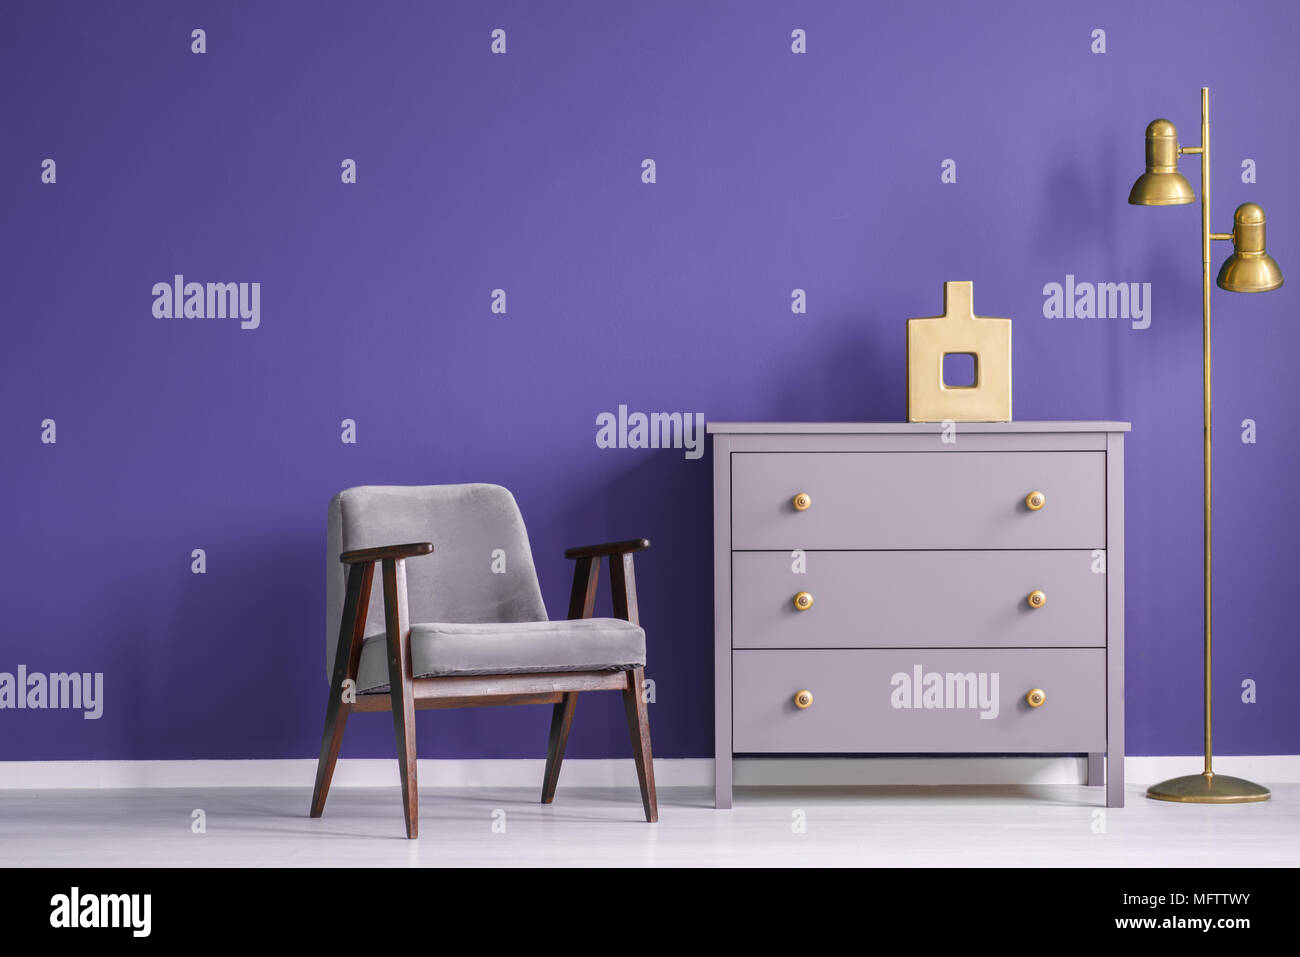 Salon ultra violet rétro intérieur avec un fauteuil et une commode à côté d'une lampe d'or. Photo réelle. Banque D'Images